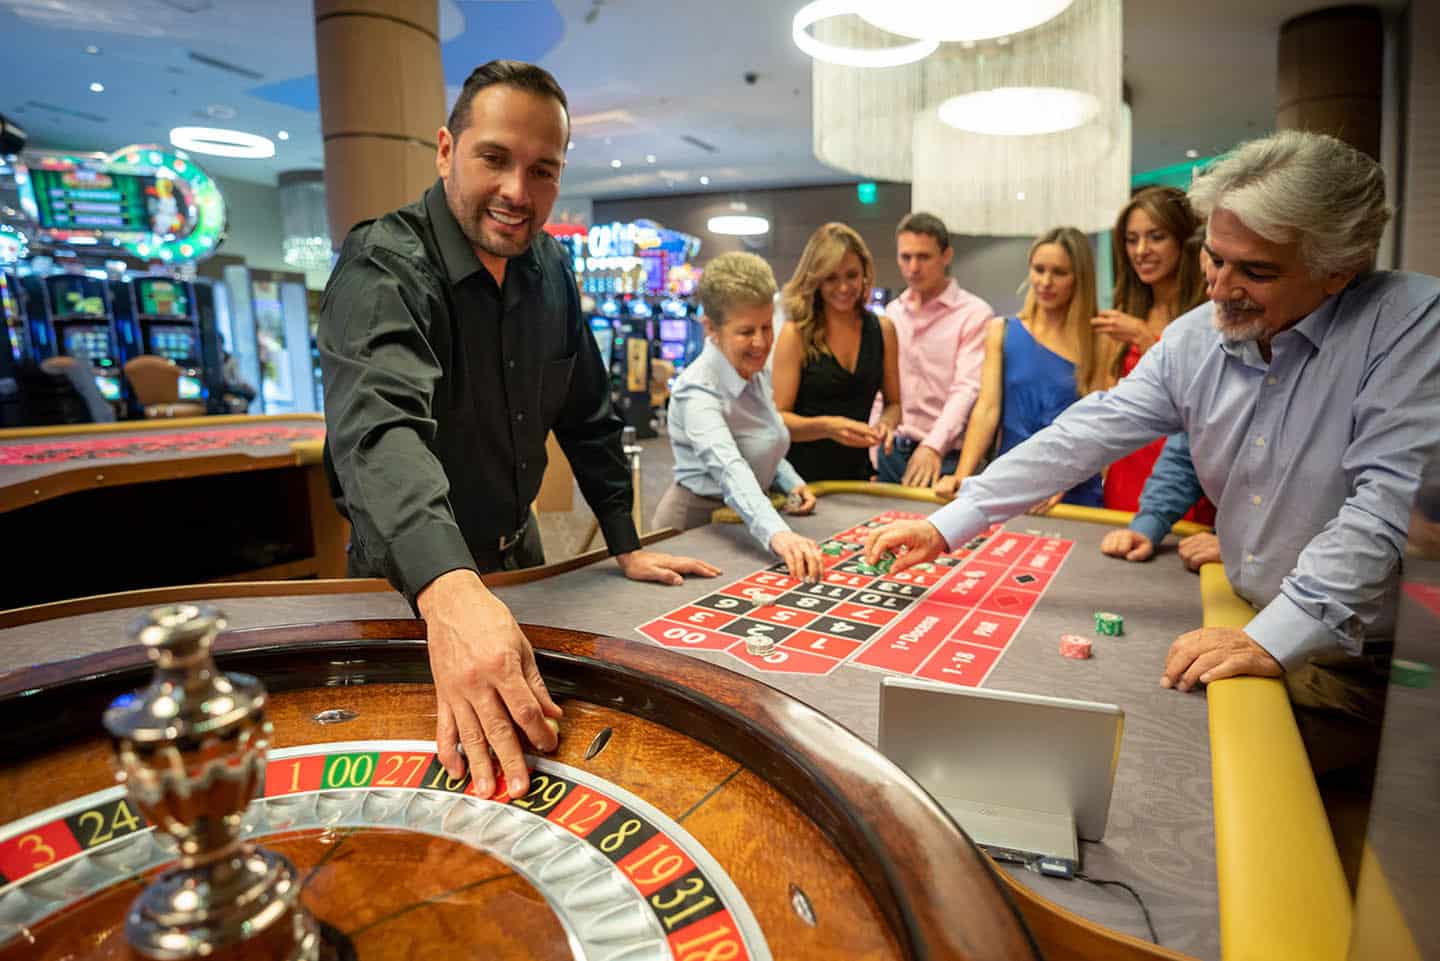 赌场工人准备在轮盘上放球,而其他人仍在表上打注笑